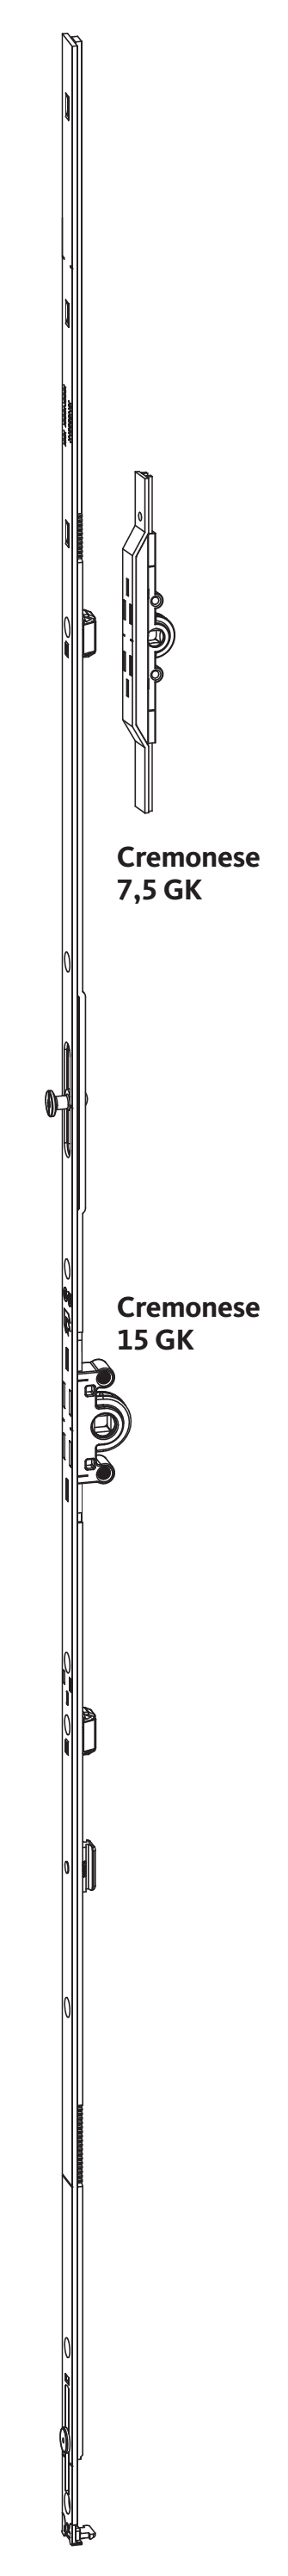 GU-ITALIA -  Cremonese UNI-JET anta ribalta altezza maniglia fissa con piedino senza dss per ribalta - gr / dim. 1940 - entrata 7,5 - alt. man. 980 - lbb/hbb 1851 - 2100